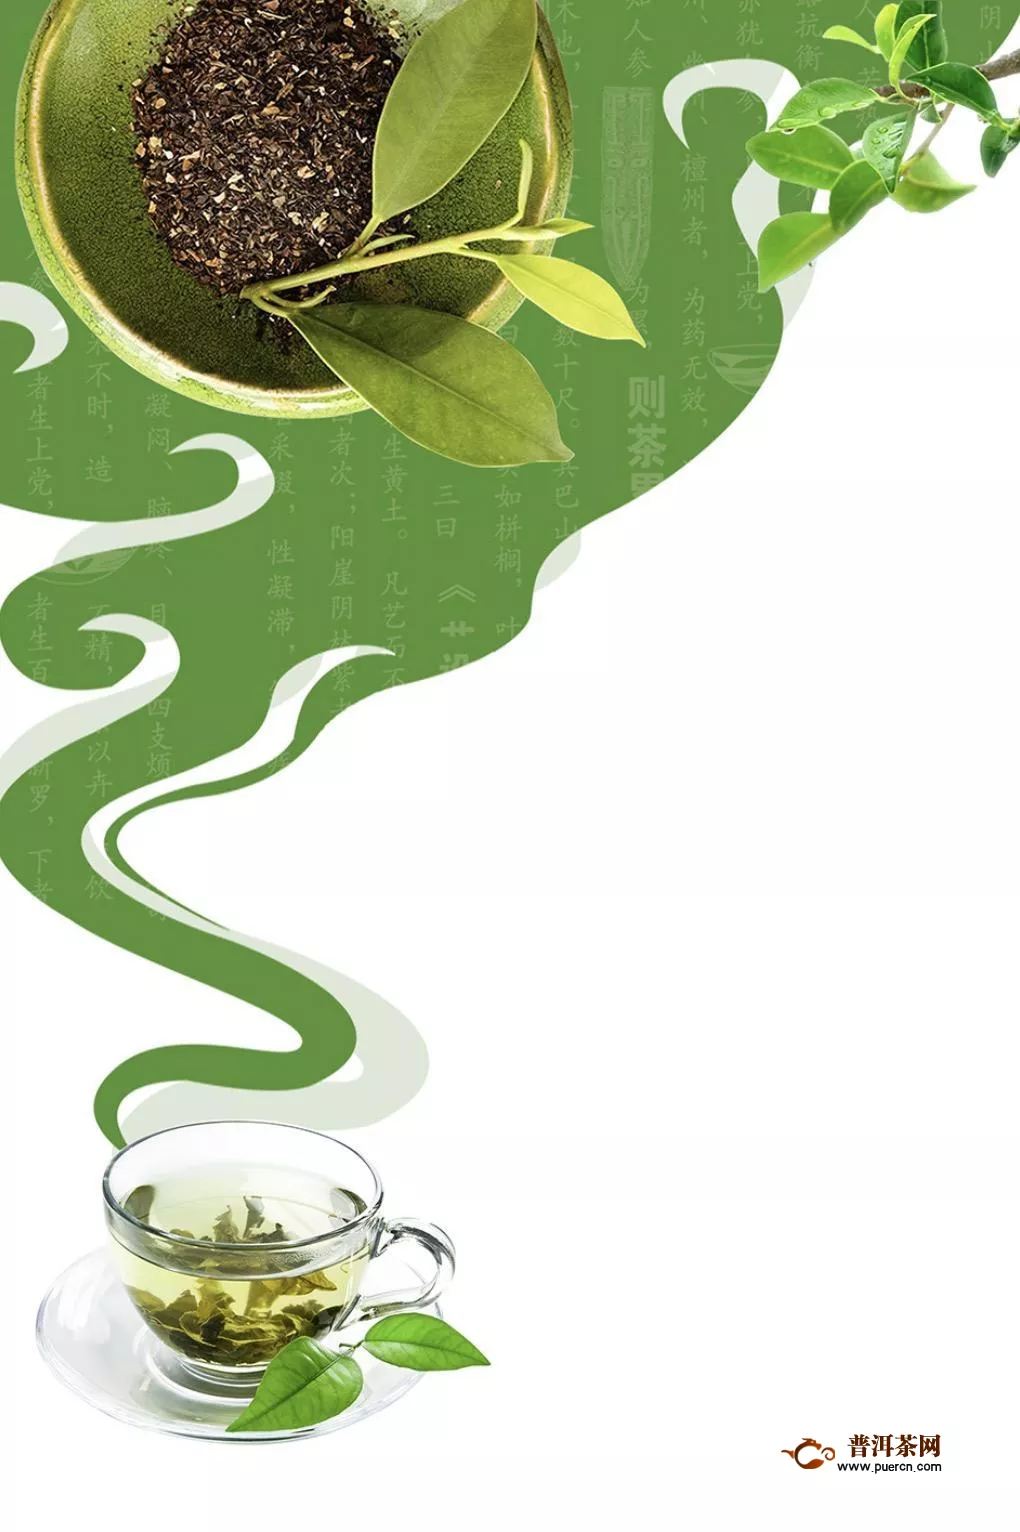 高品质需求壮大全球茶叶市场规模 中国茶叶总产量全球占比超四成 